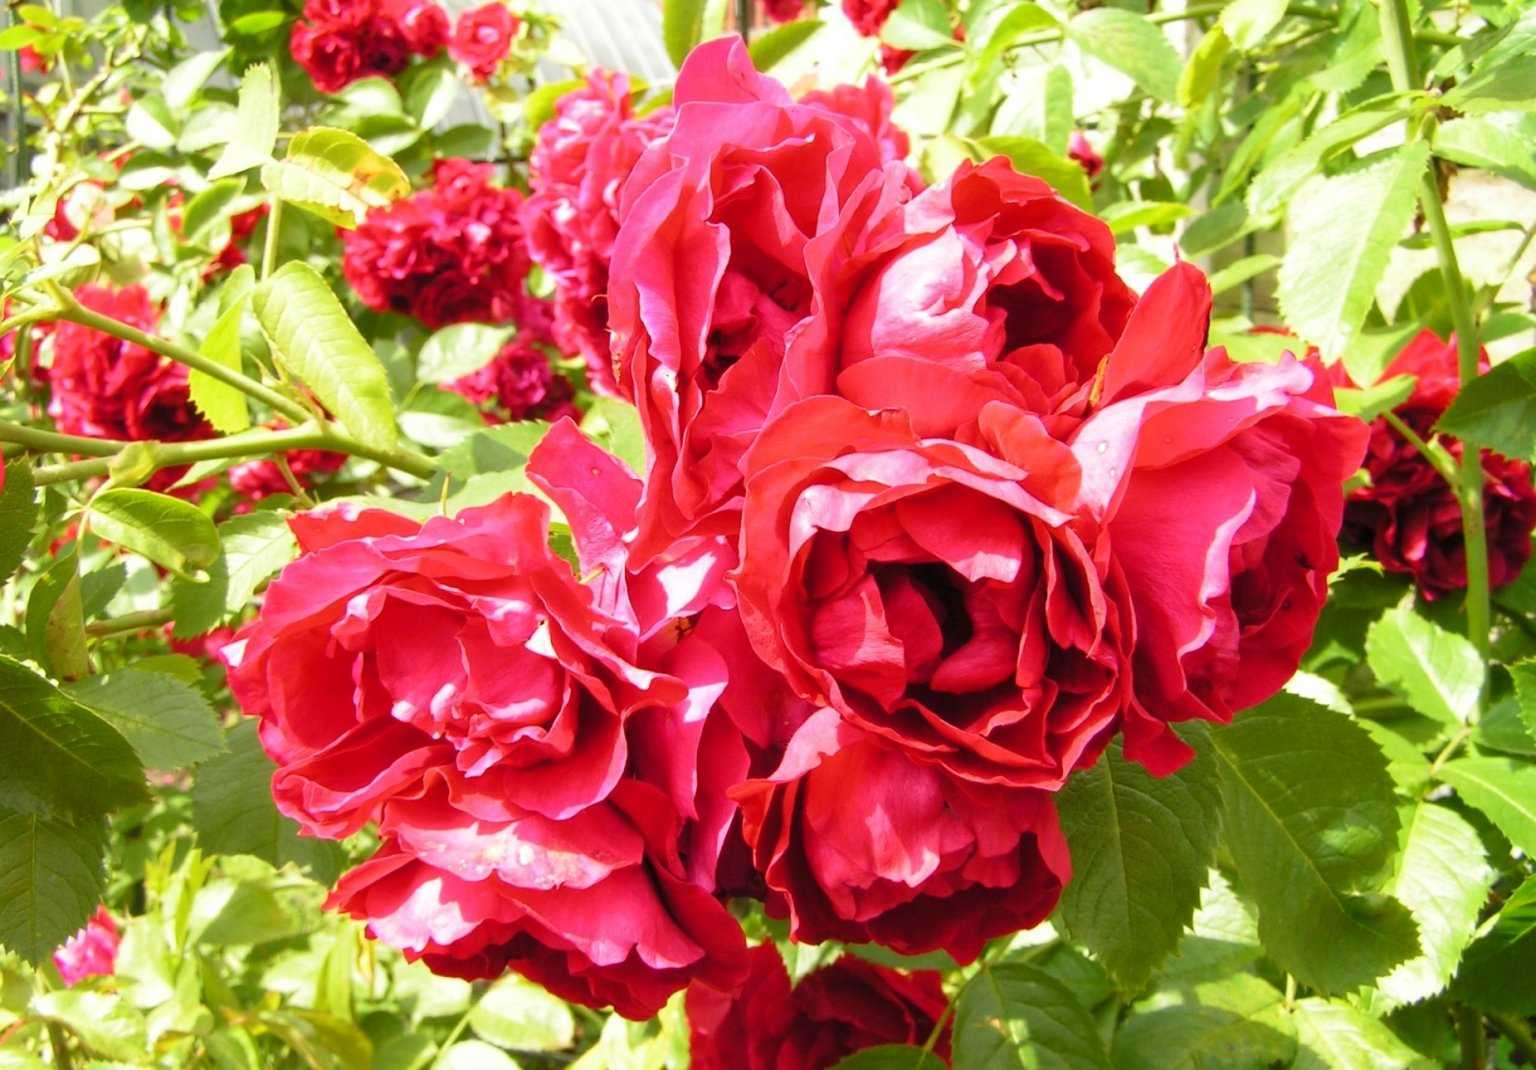 Описание розы фламментанц: когда сажать плетистый сорт, болезни и вредители